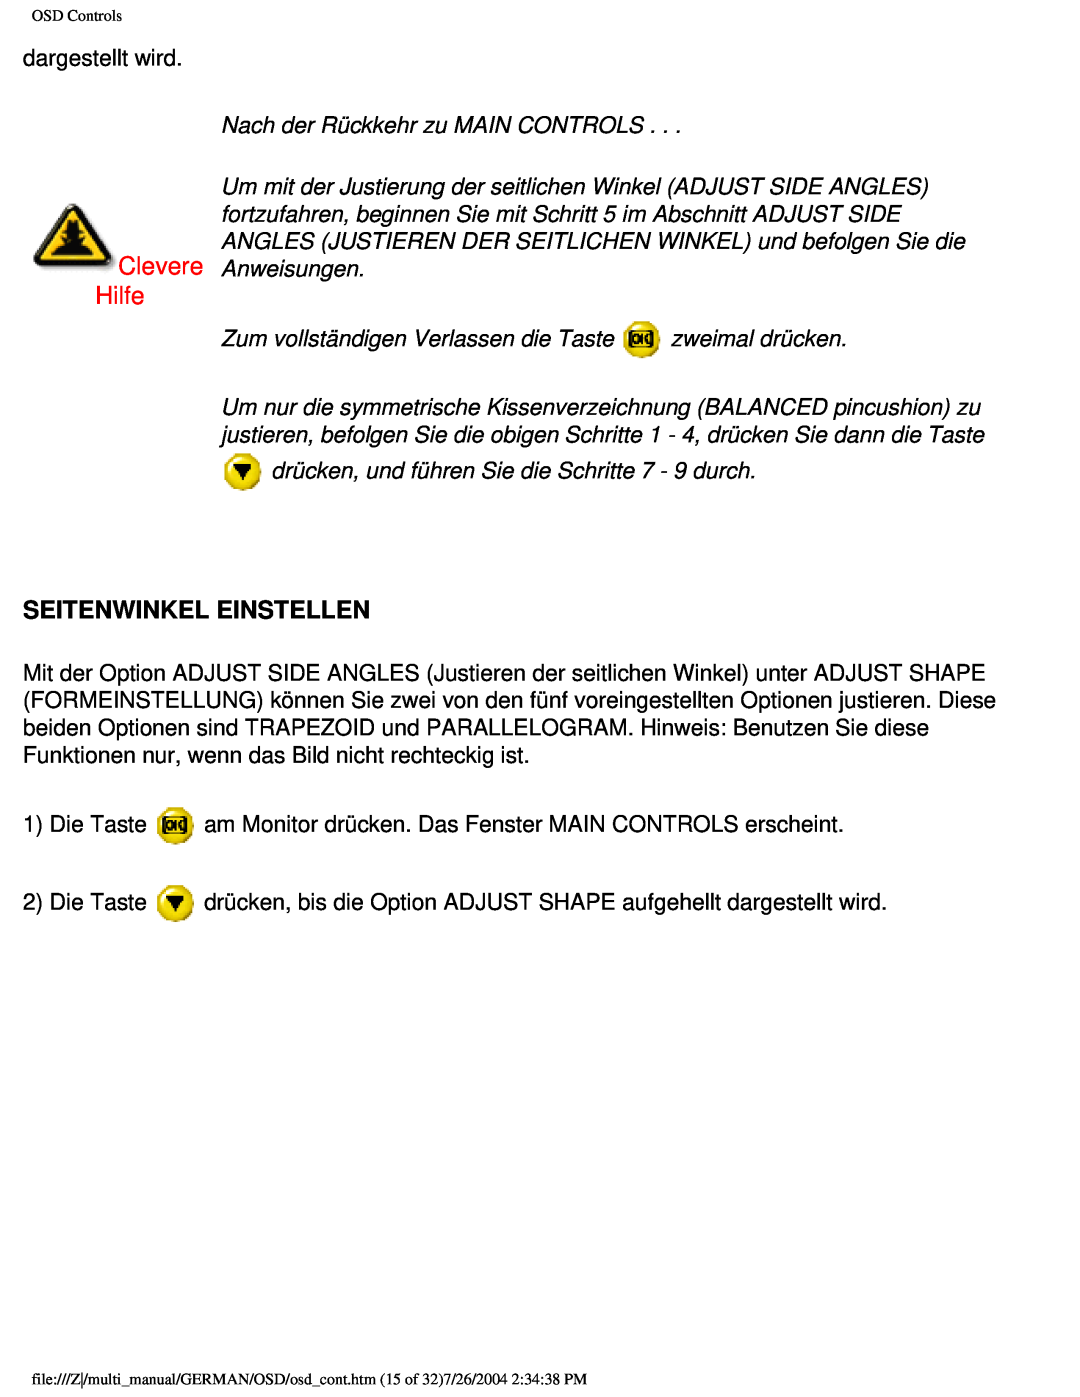 Philips 107X2 user manual Seitenwinkel Einstellen, Clevere Hilfe, Nach der Rückkehr zu MAIN CONTROLS 